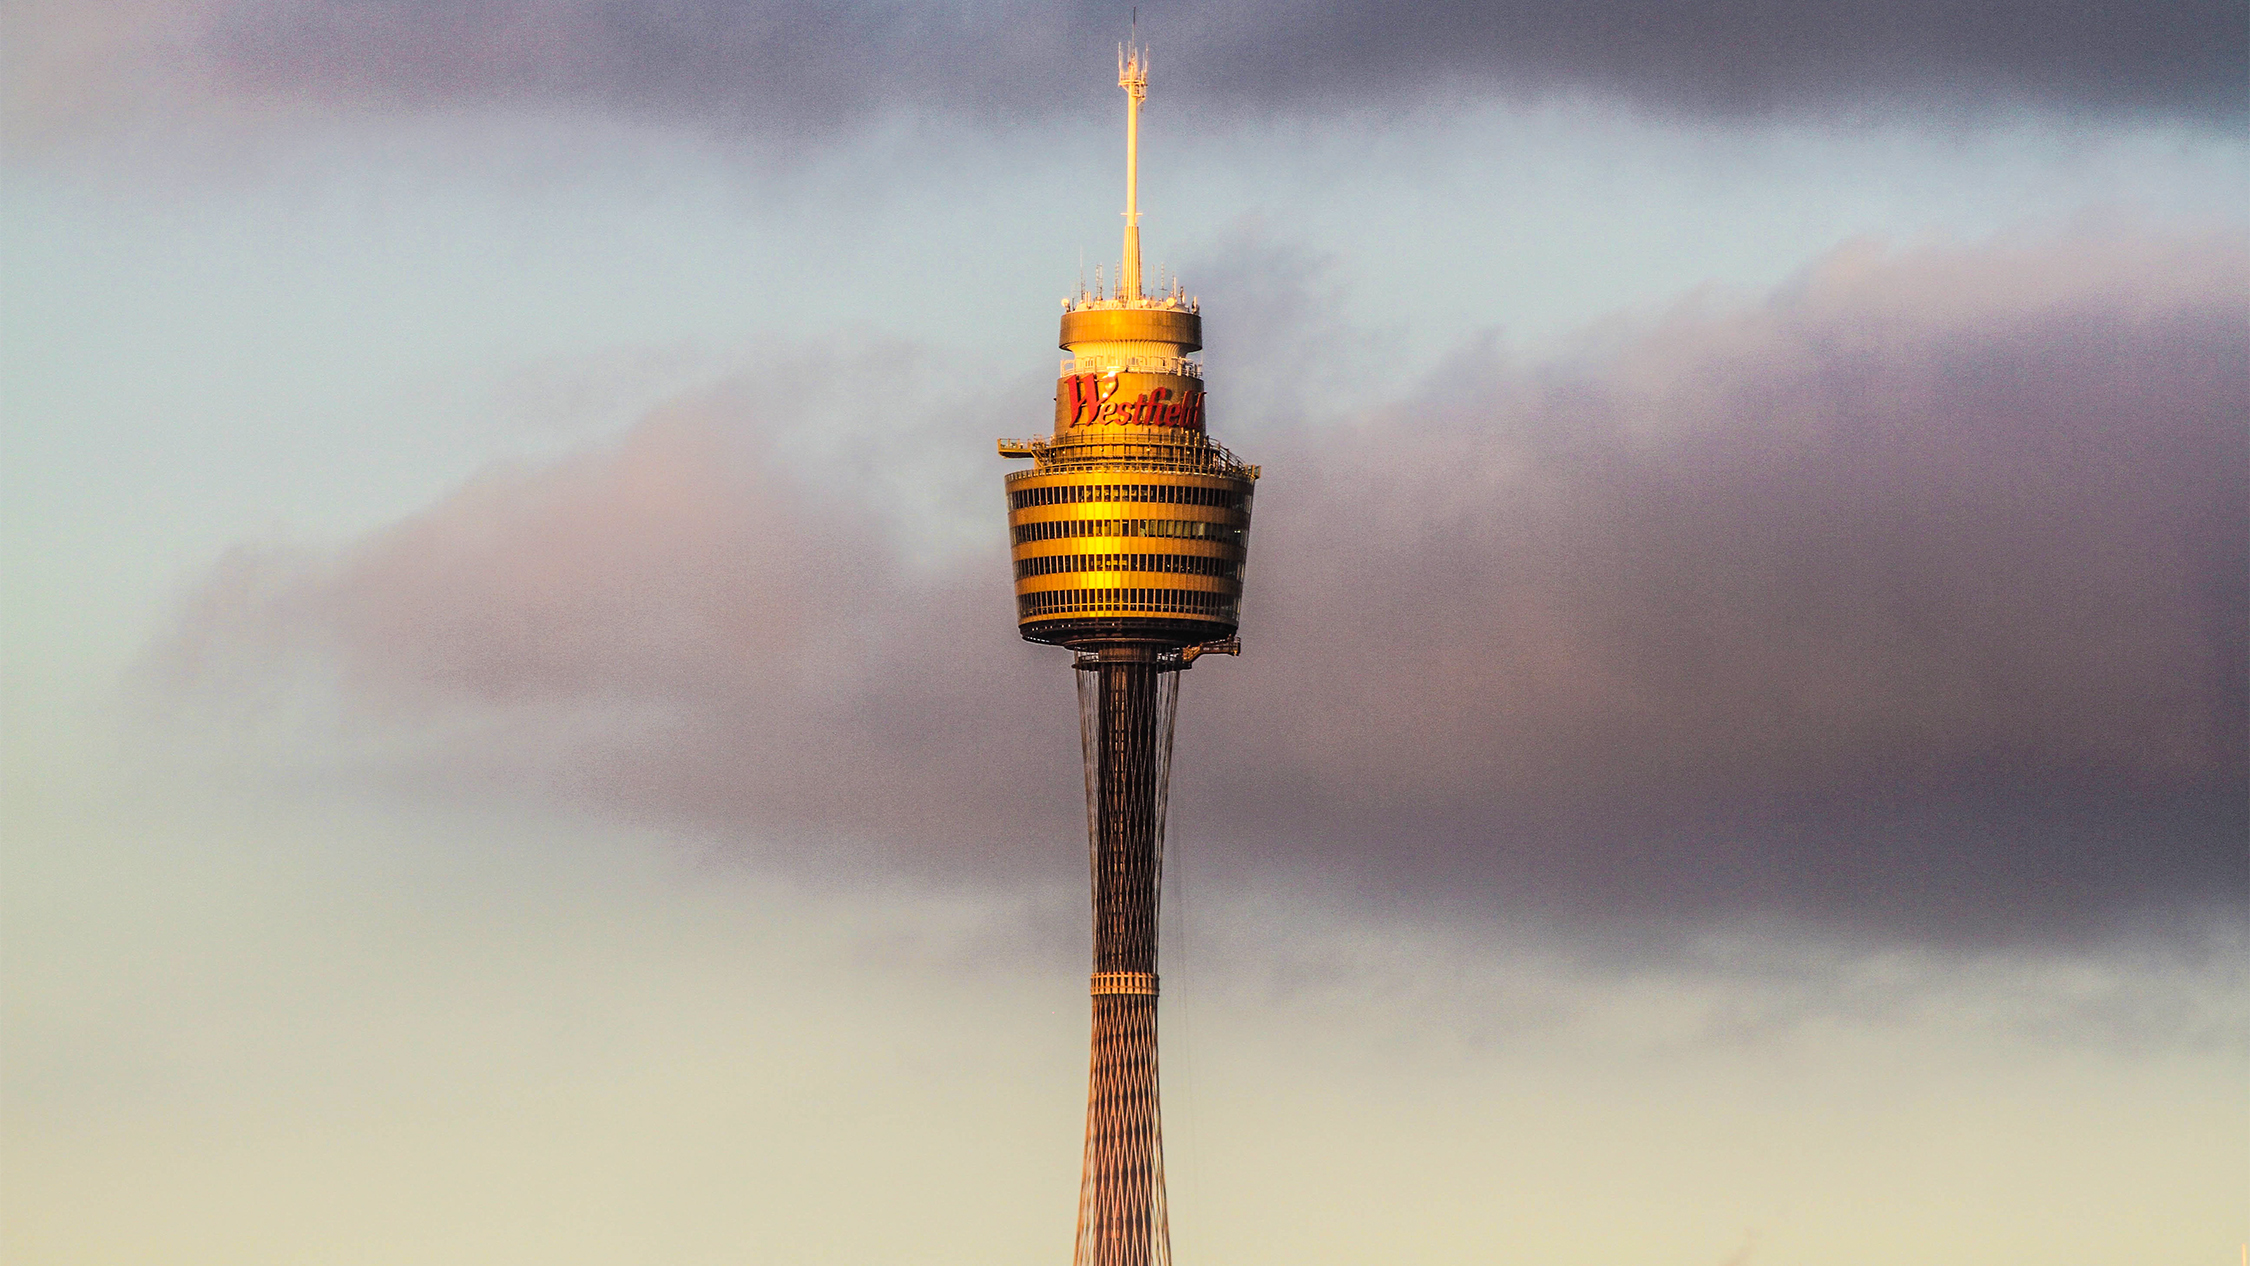 Sydney Tower Eye | Museen in Sydney, Sydney